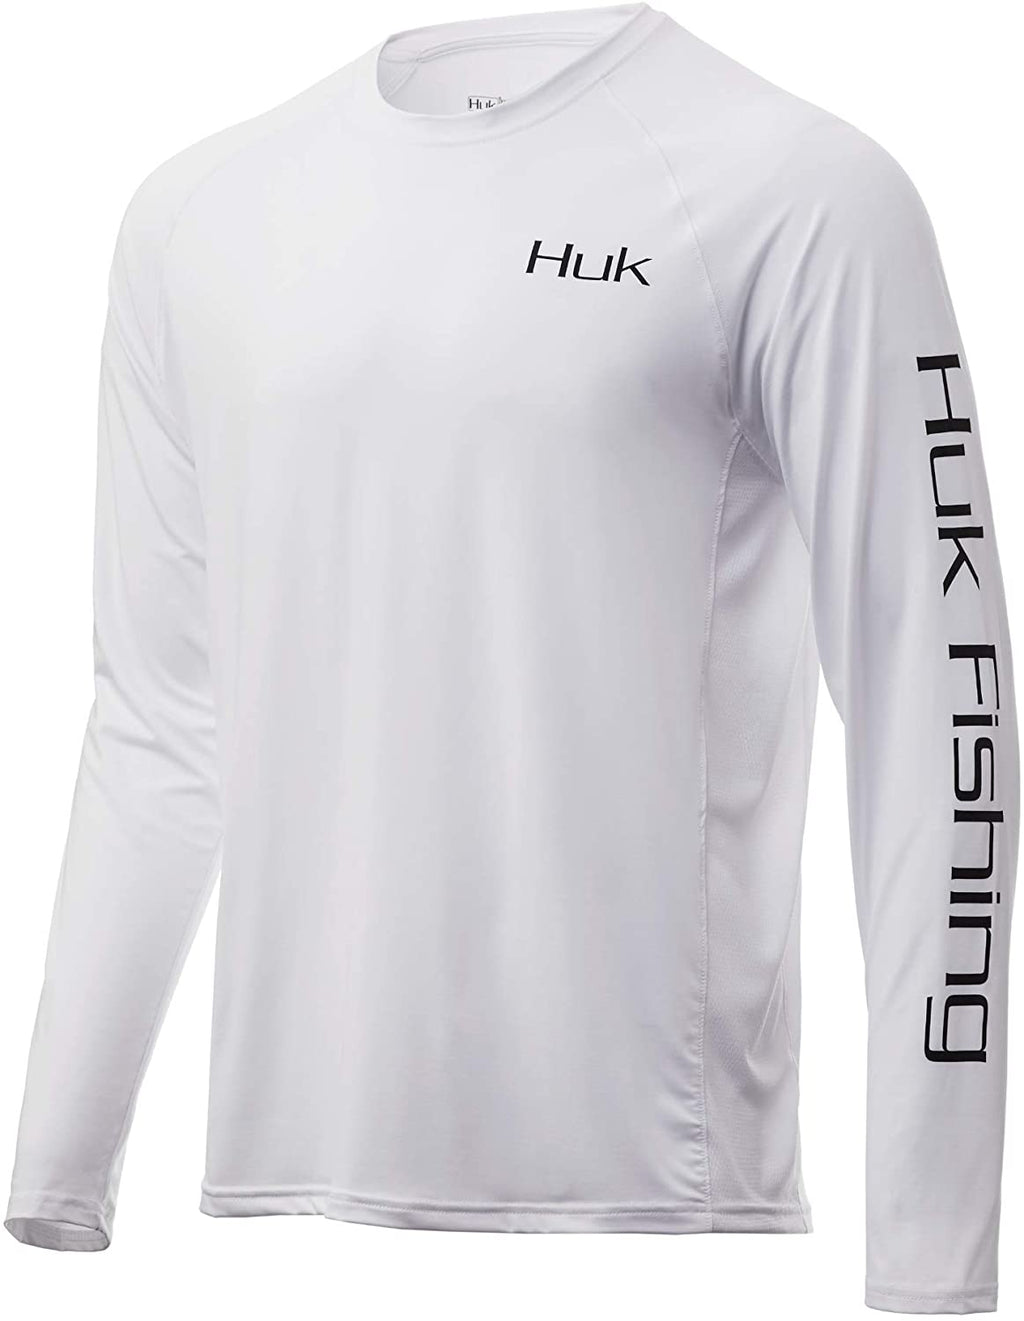 Huk Performance Fishing Long Sleeve Shirt Size XXLarge